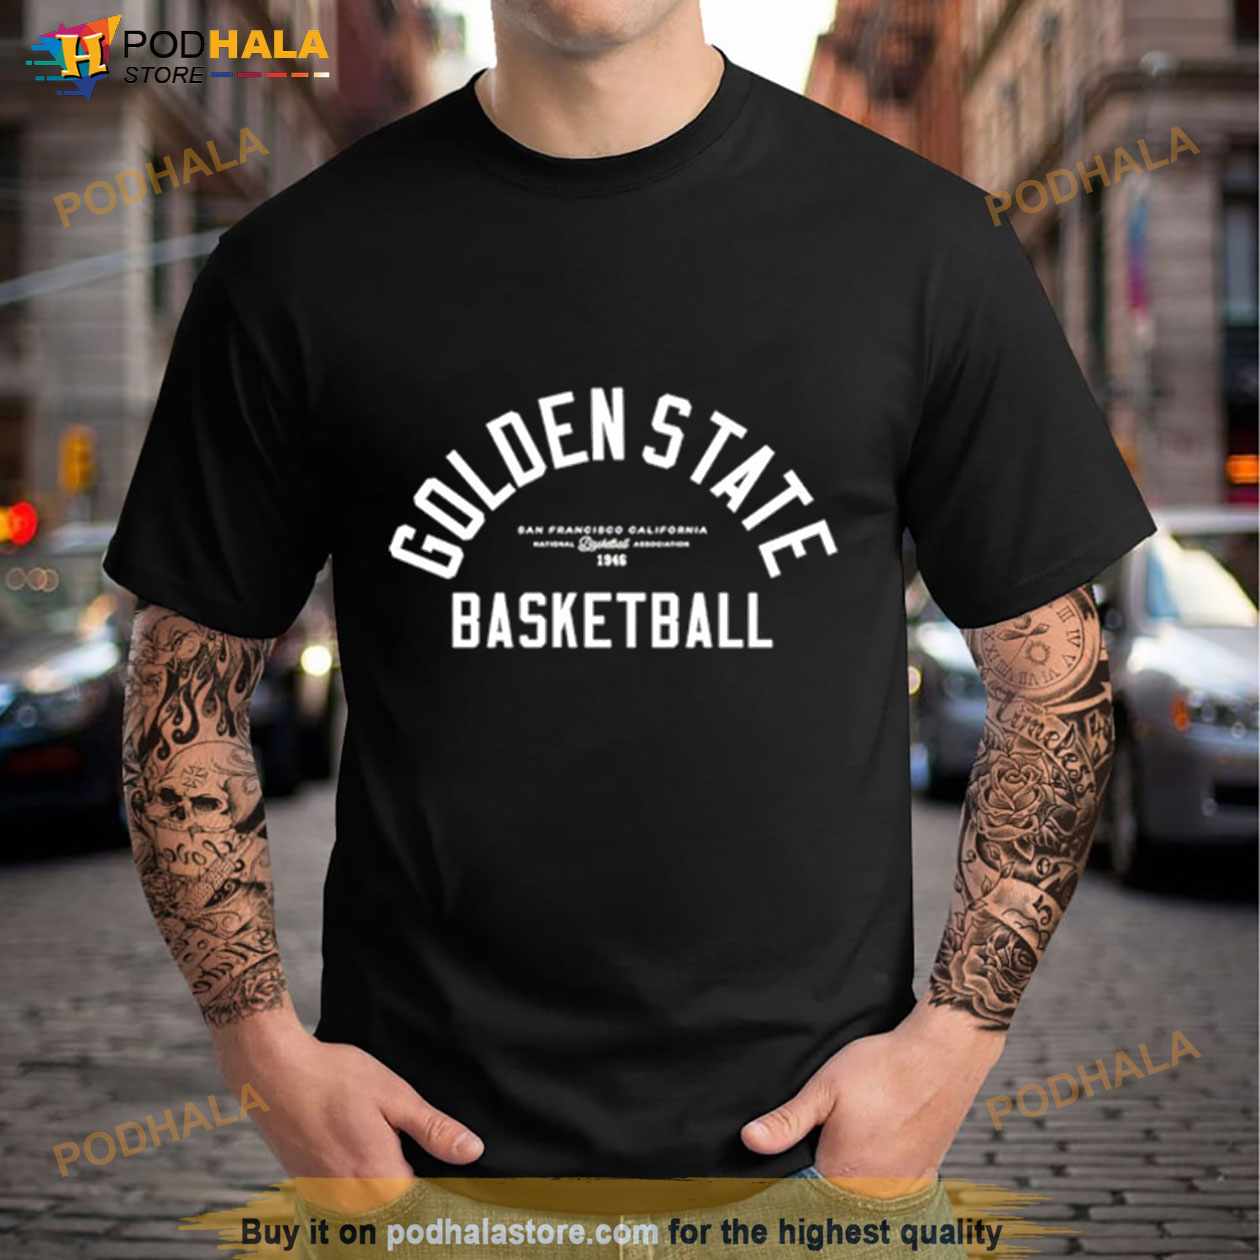 golden state warriors t-shirt